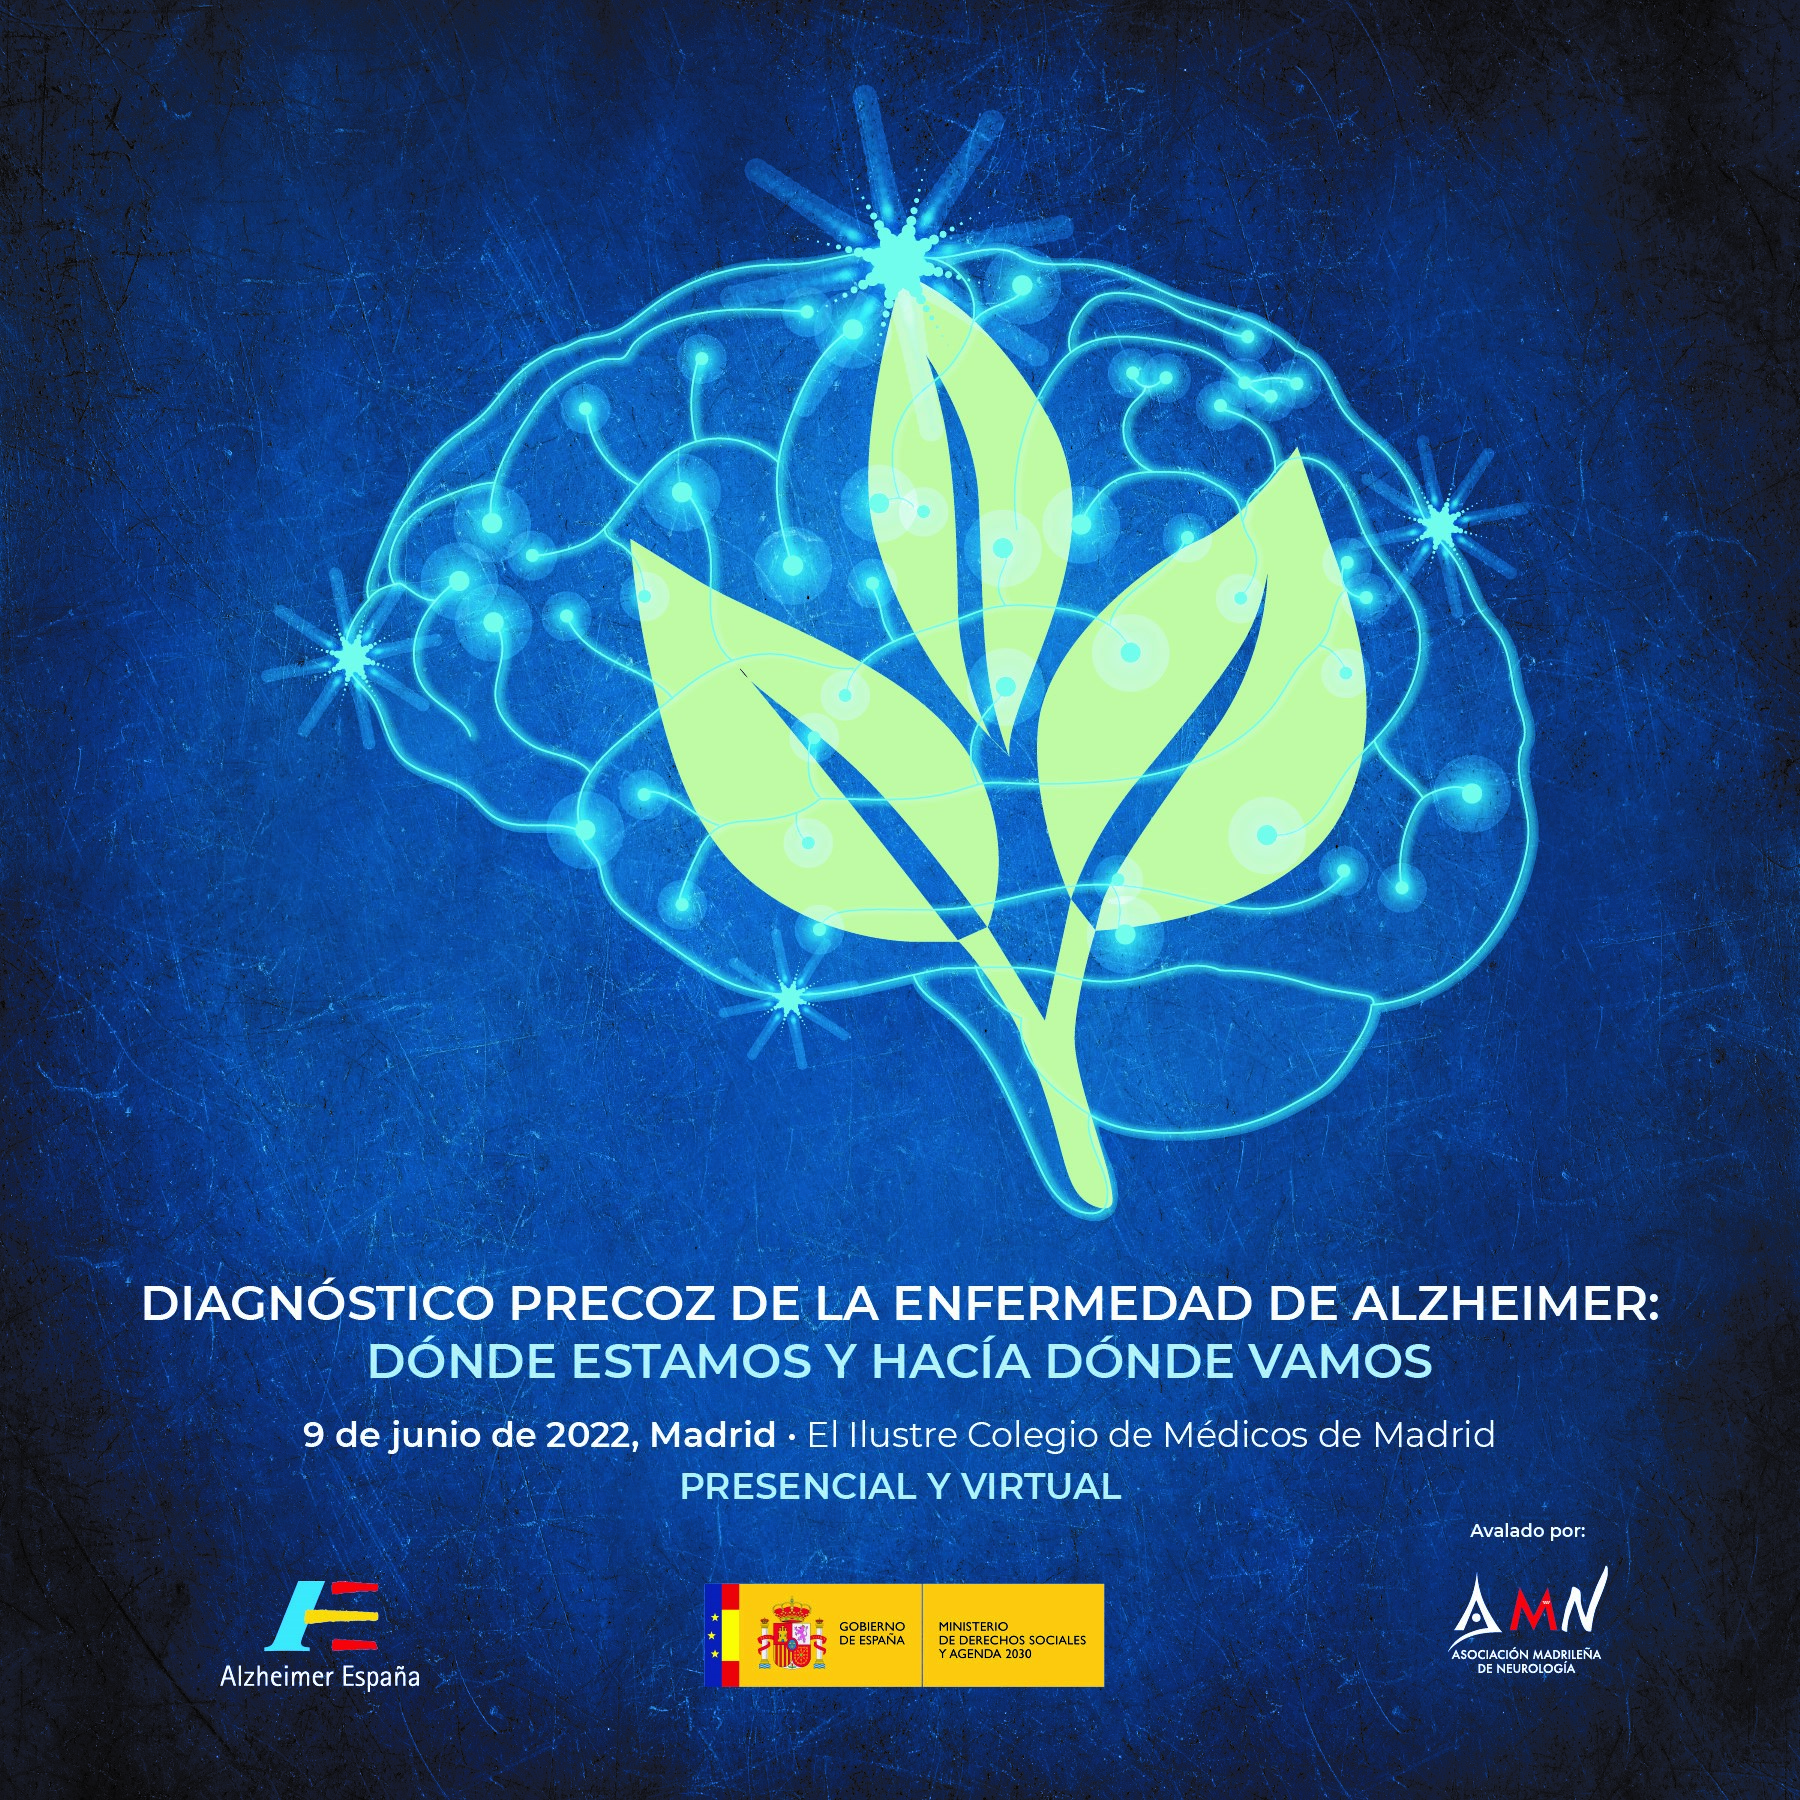 Jornada “Diagnóstico precoz de la enfermedad de alzheimer: dónde estamos y hacia dónde vamos”